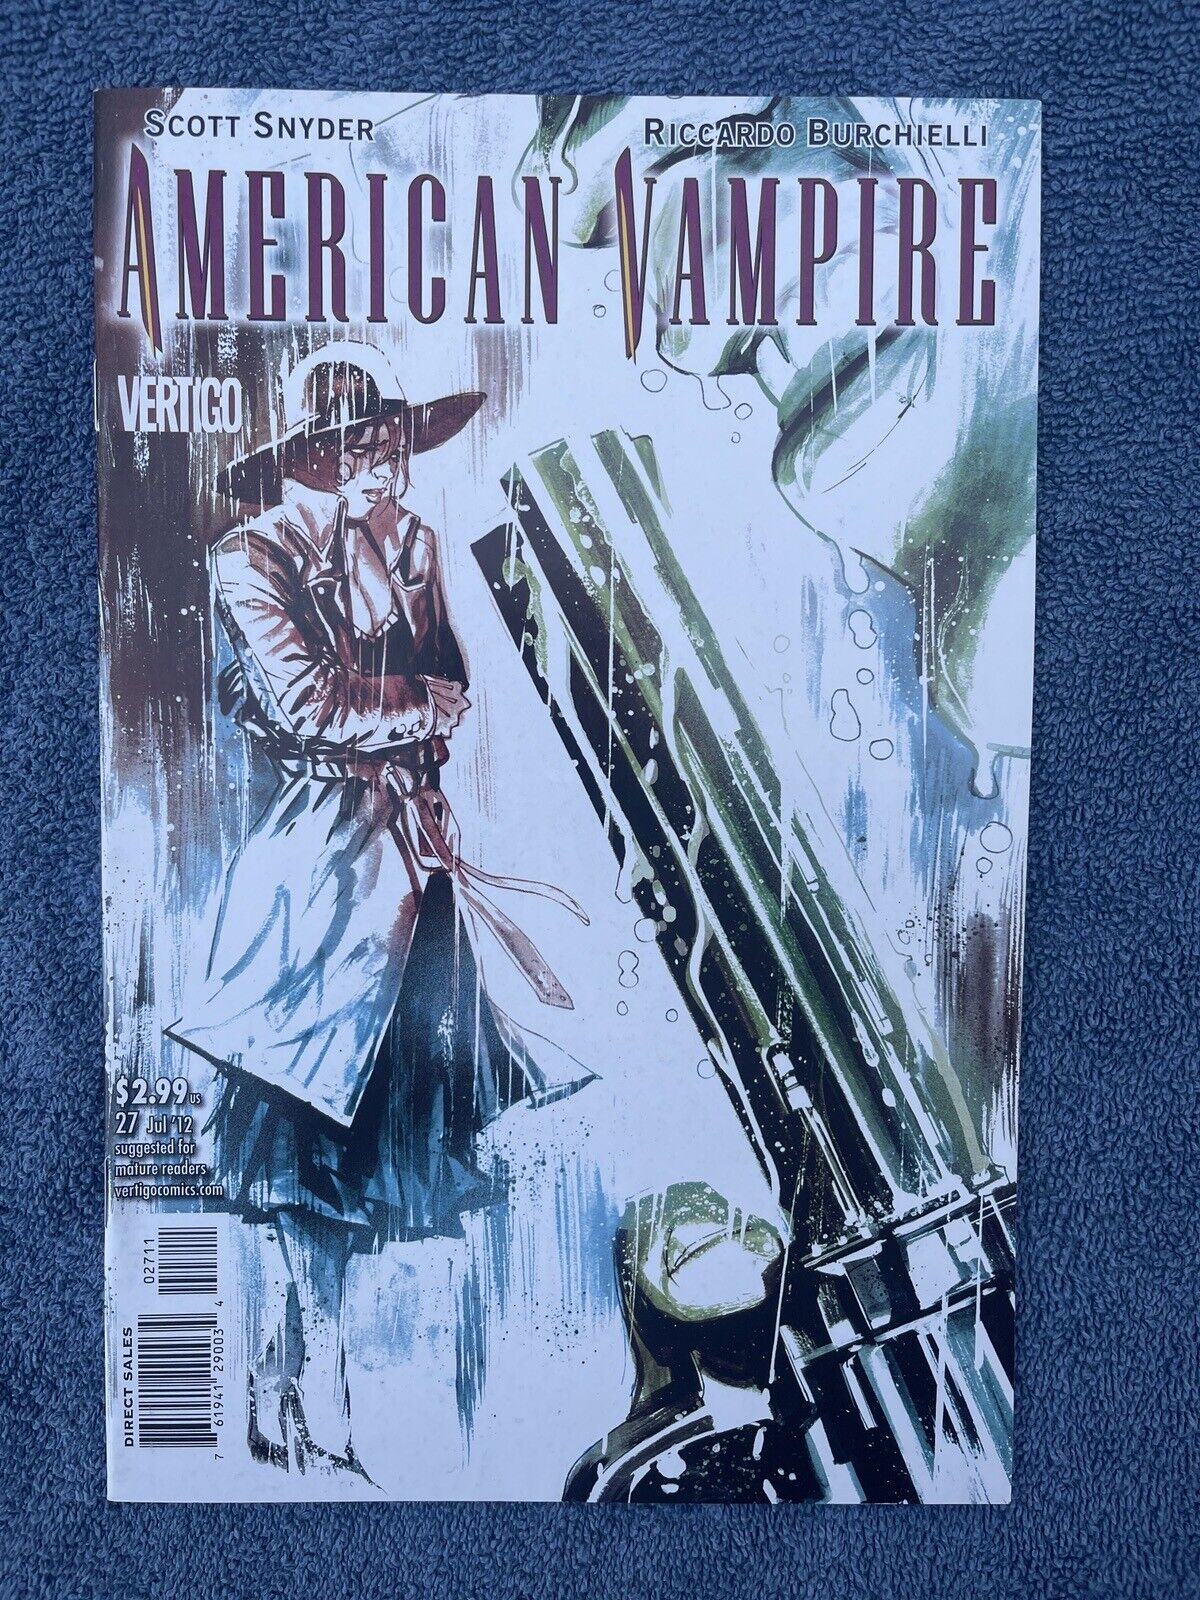 AMERICAN VAMPIRE #27 (DC / Vertigo, 2012) Snyder & Burchielli ~ The Nocturnes 2